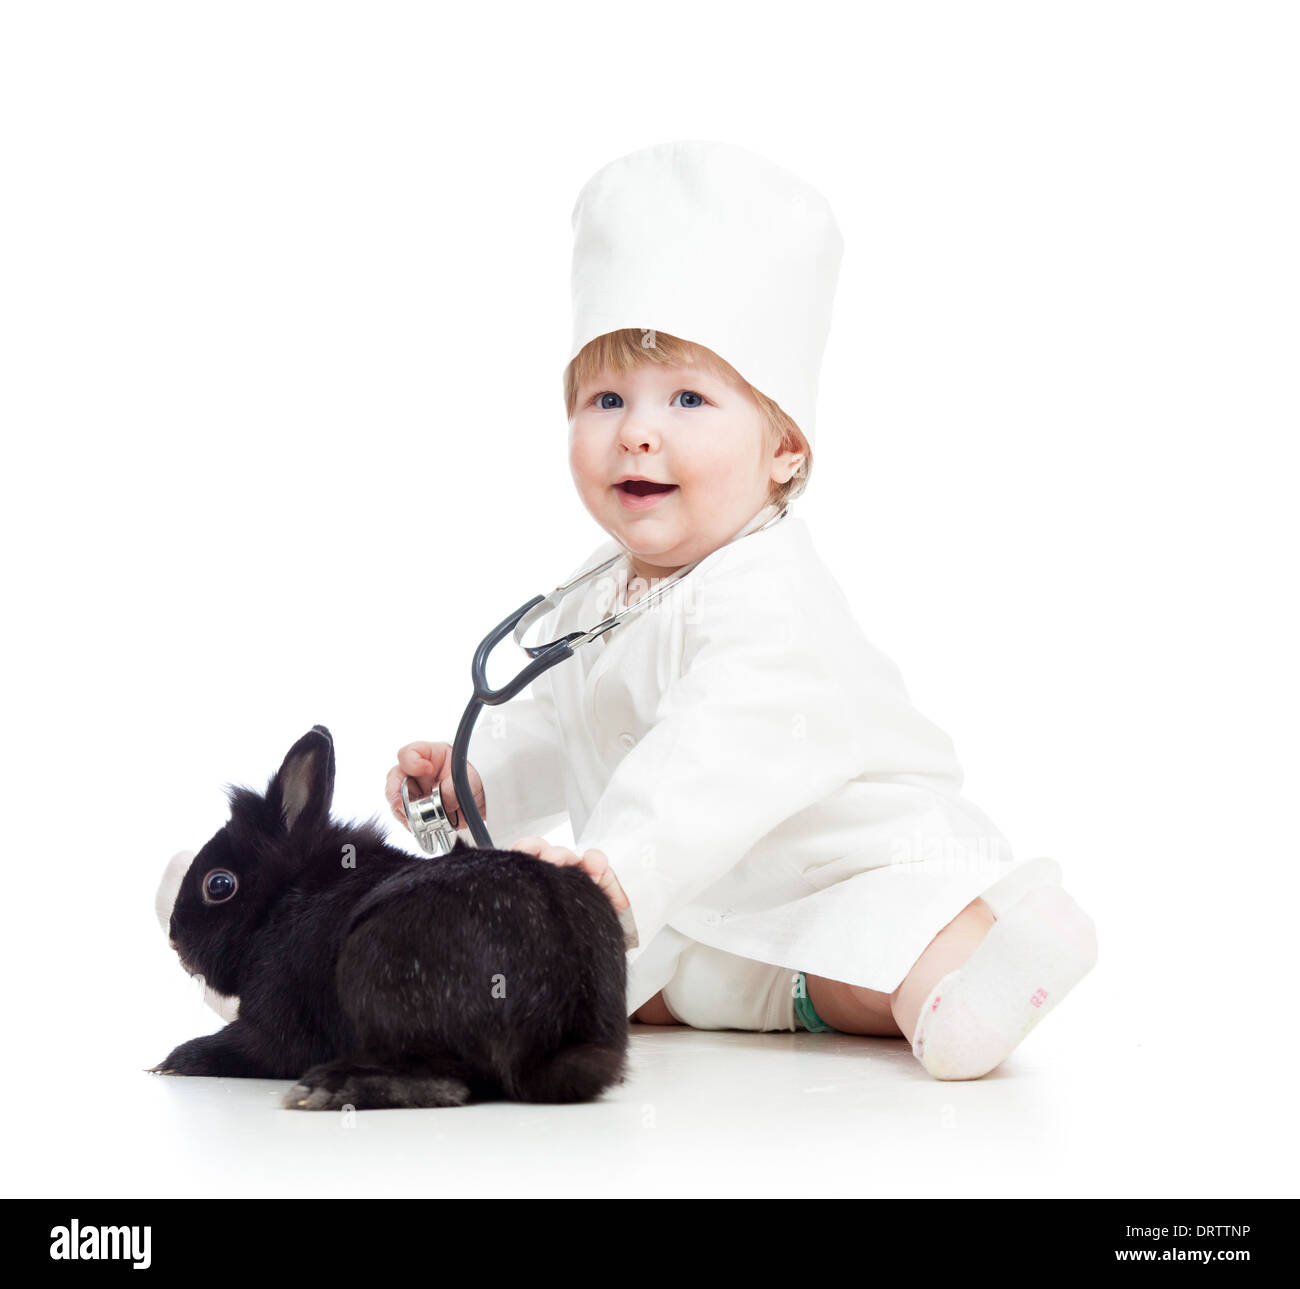 Avec des vêtements pour enfants de médecin jouant avec bunny pet Banque D'Images